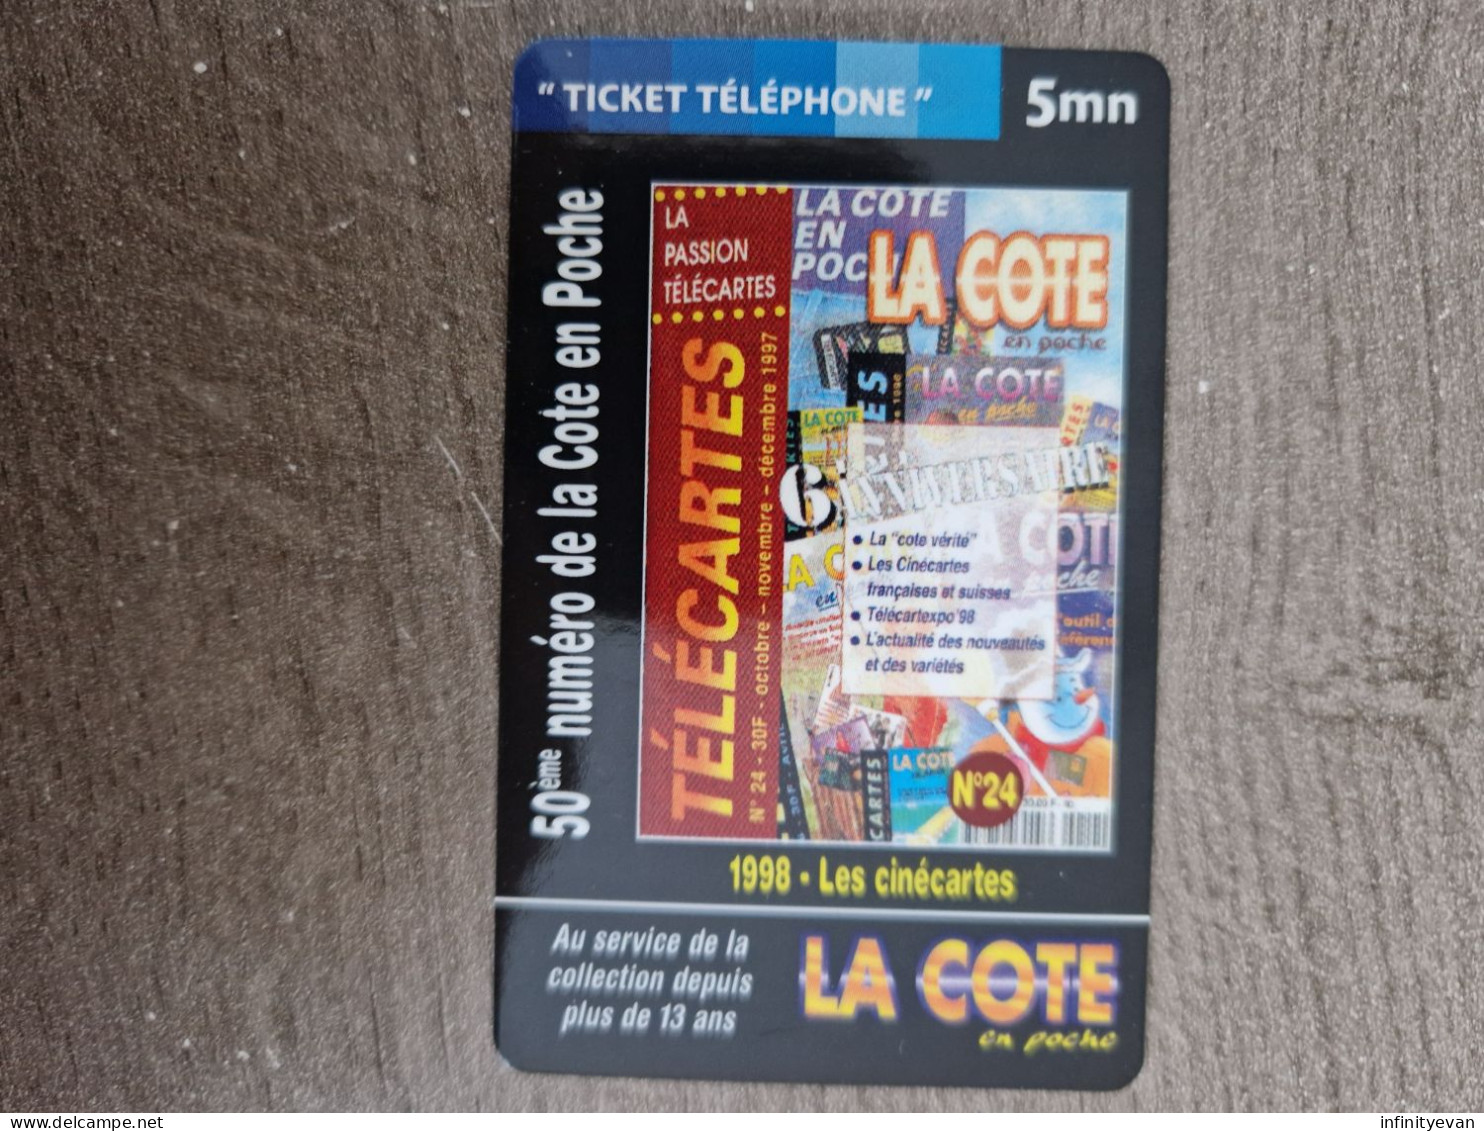 TICKET DE TELEPHONE COTE EN POCHE 4 - Biglietti FT